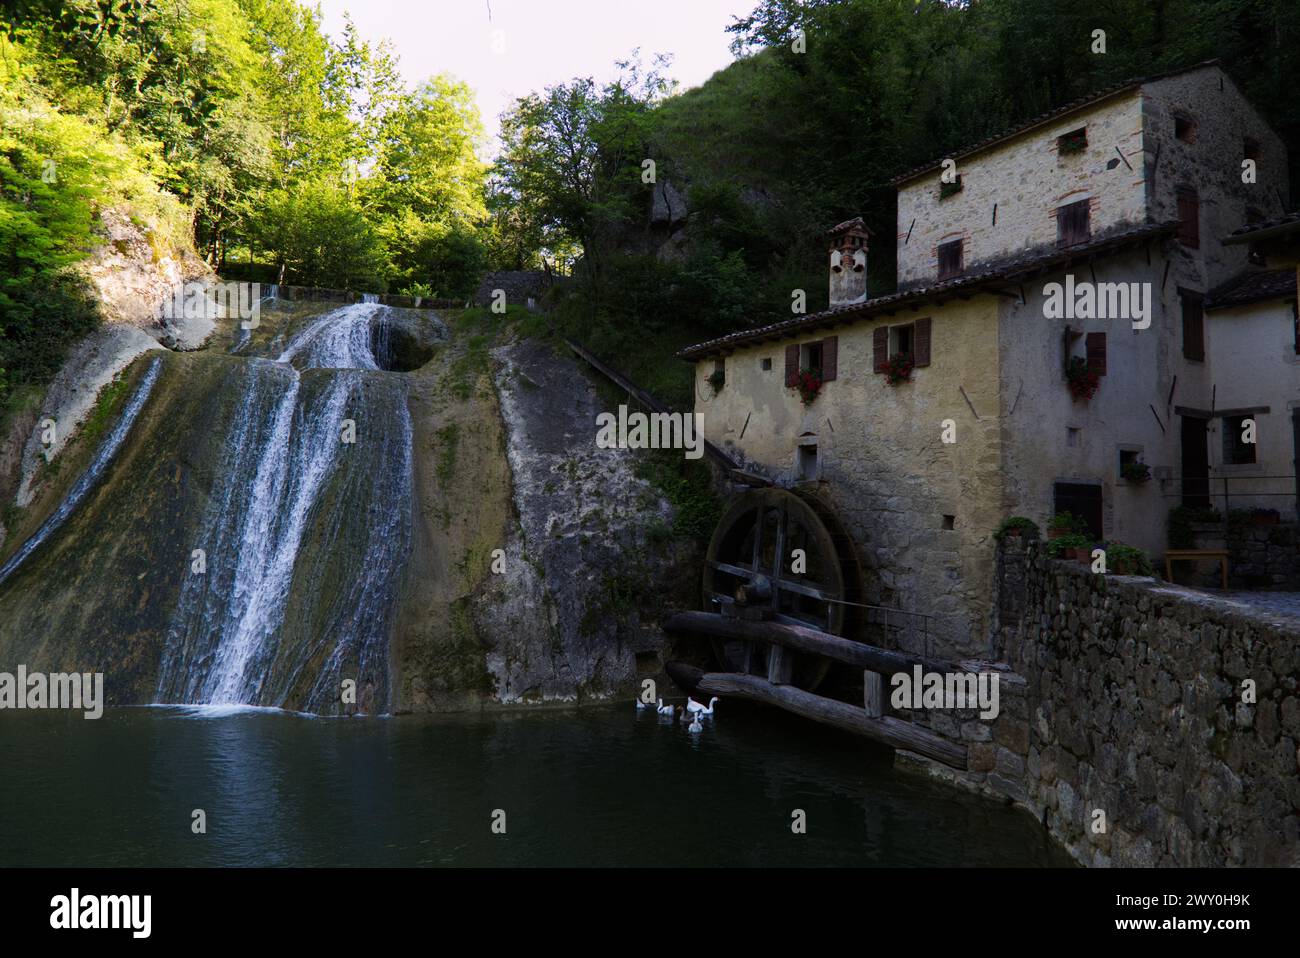 Molinetto della Croda in the Lierza valley, Veneto, Italy Stock Photo